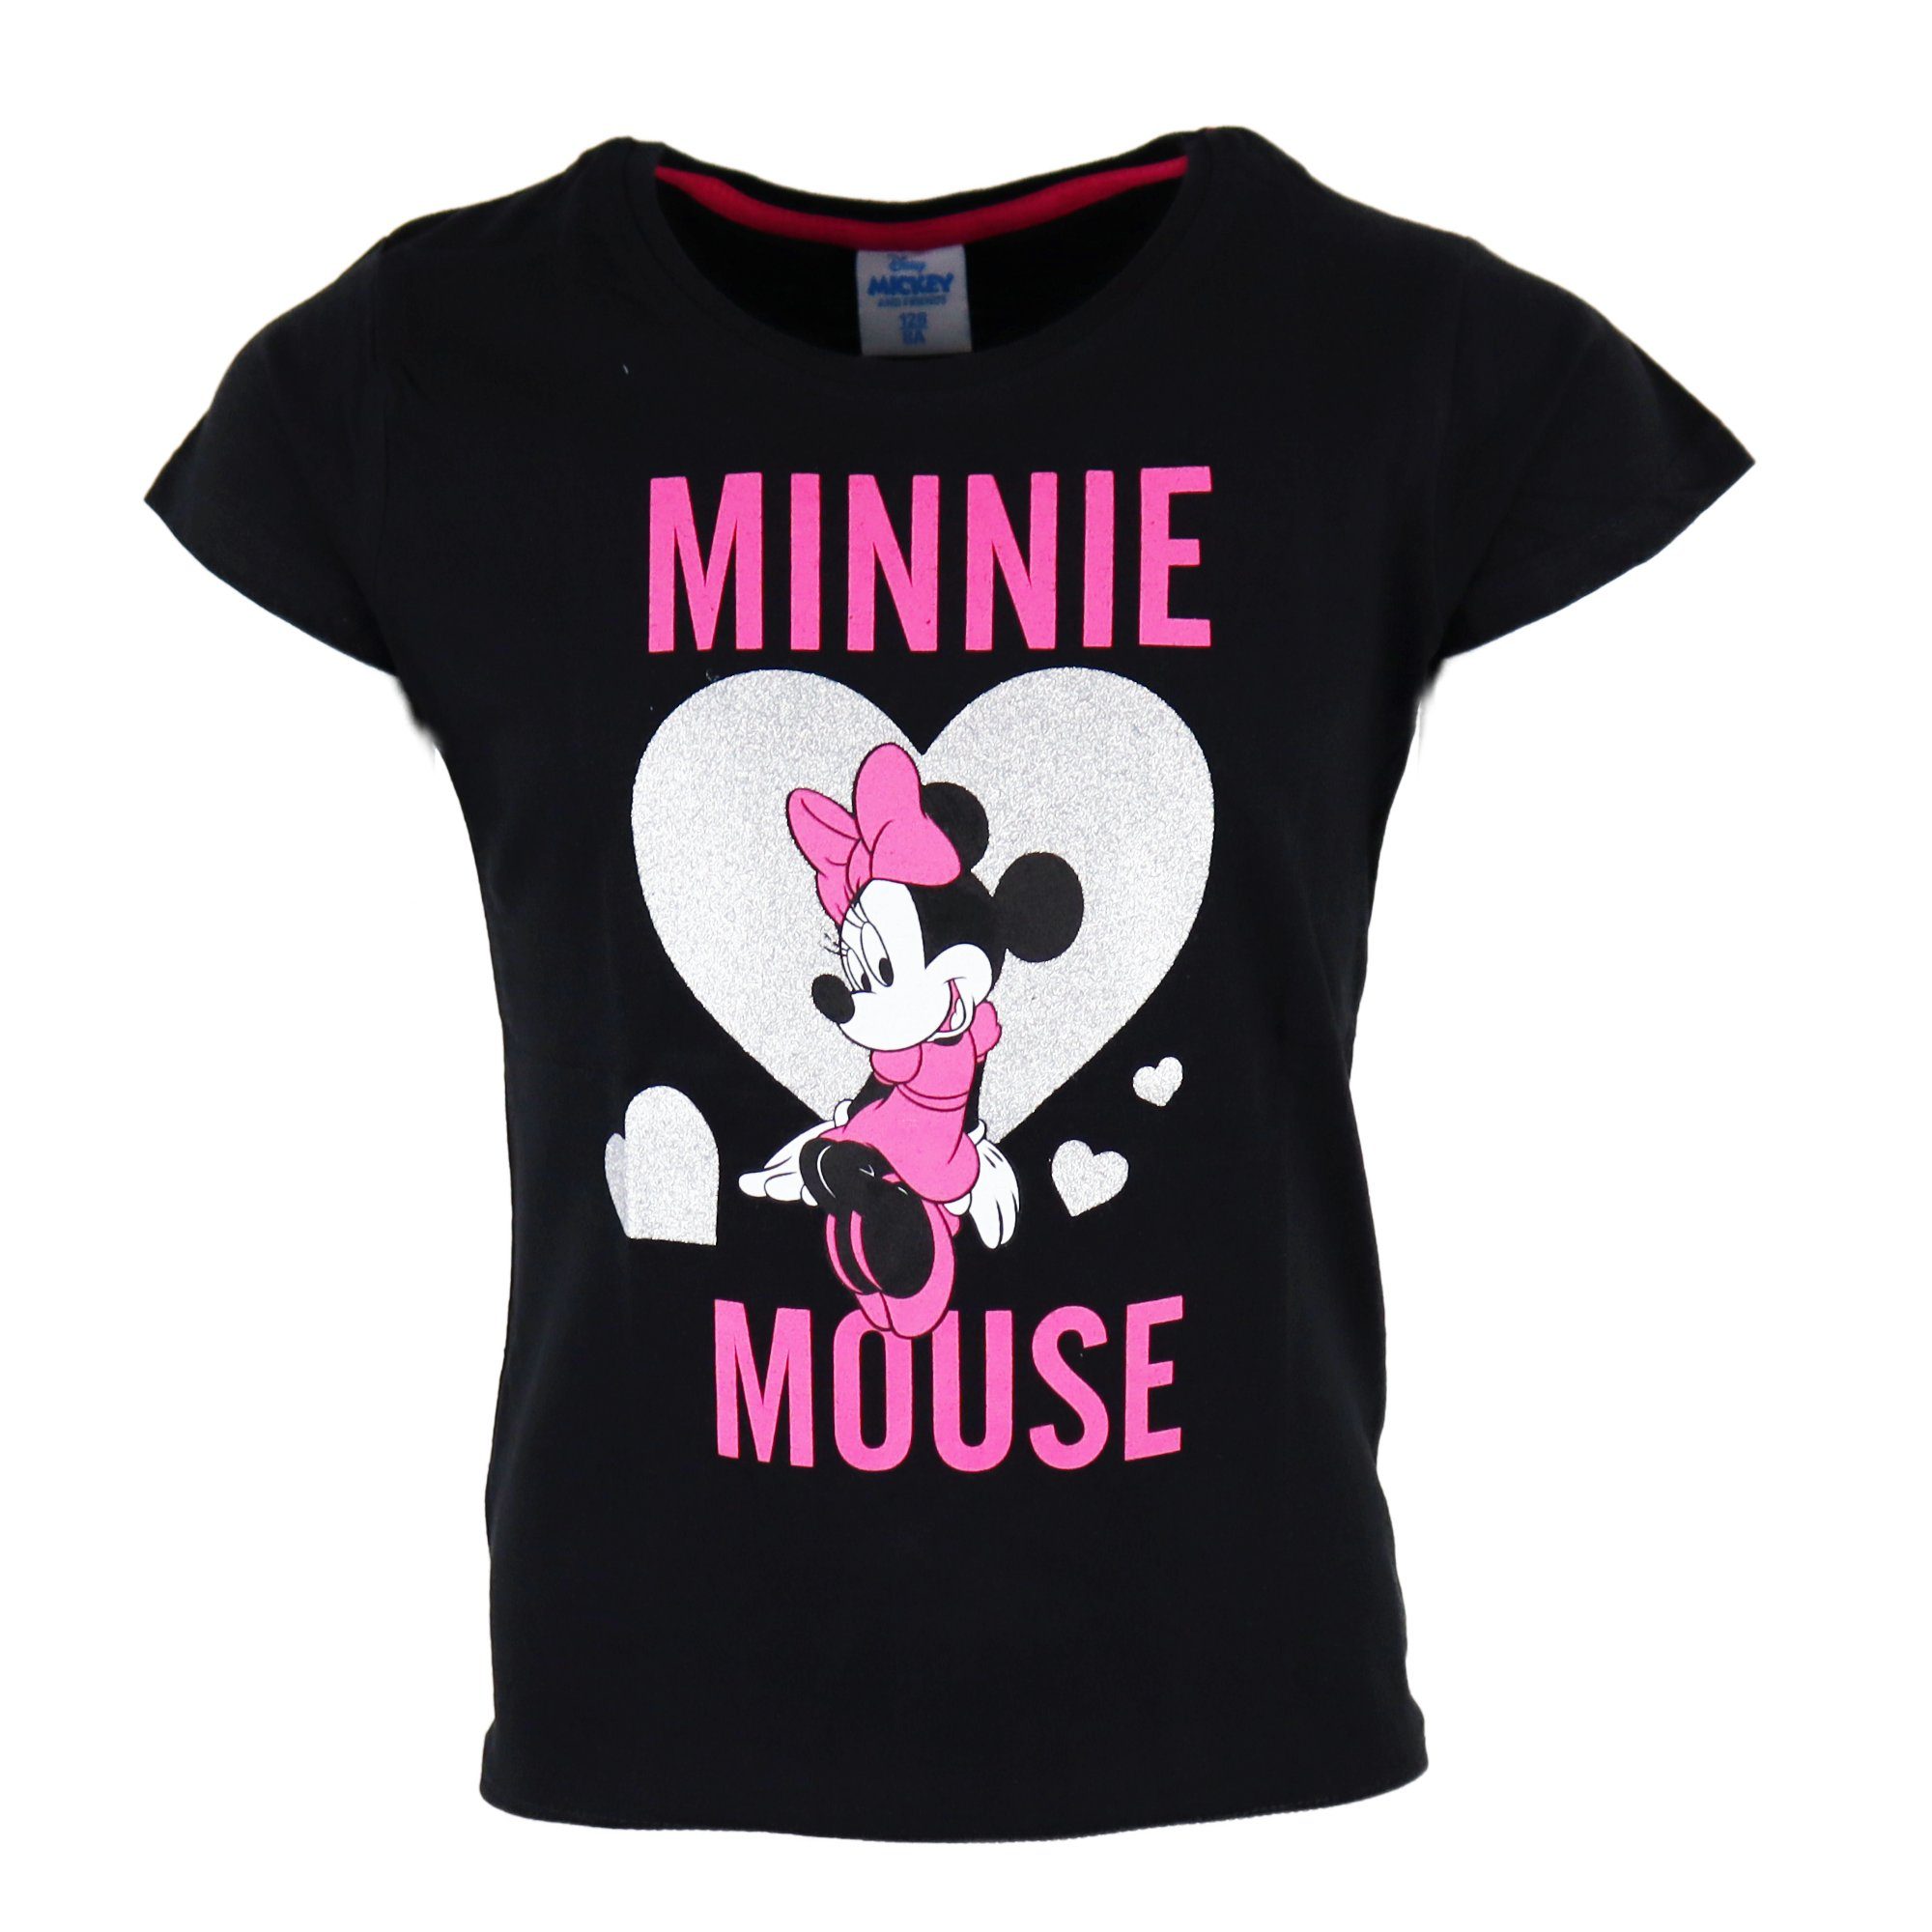 außerordentlich Disney Minnie Mouse T-Shirt Minnie Grau Mädchen 134, 104 bis oder Maus Schwarz Gr. Kinder Shirt Love